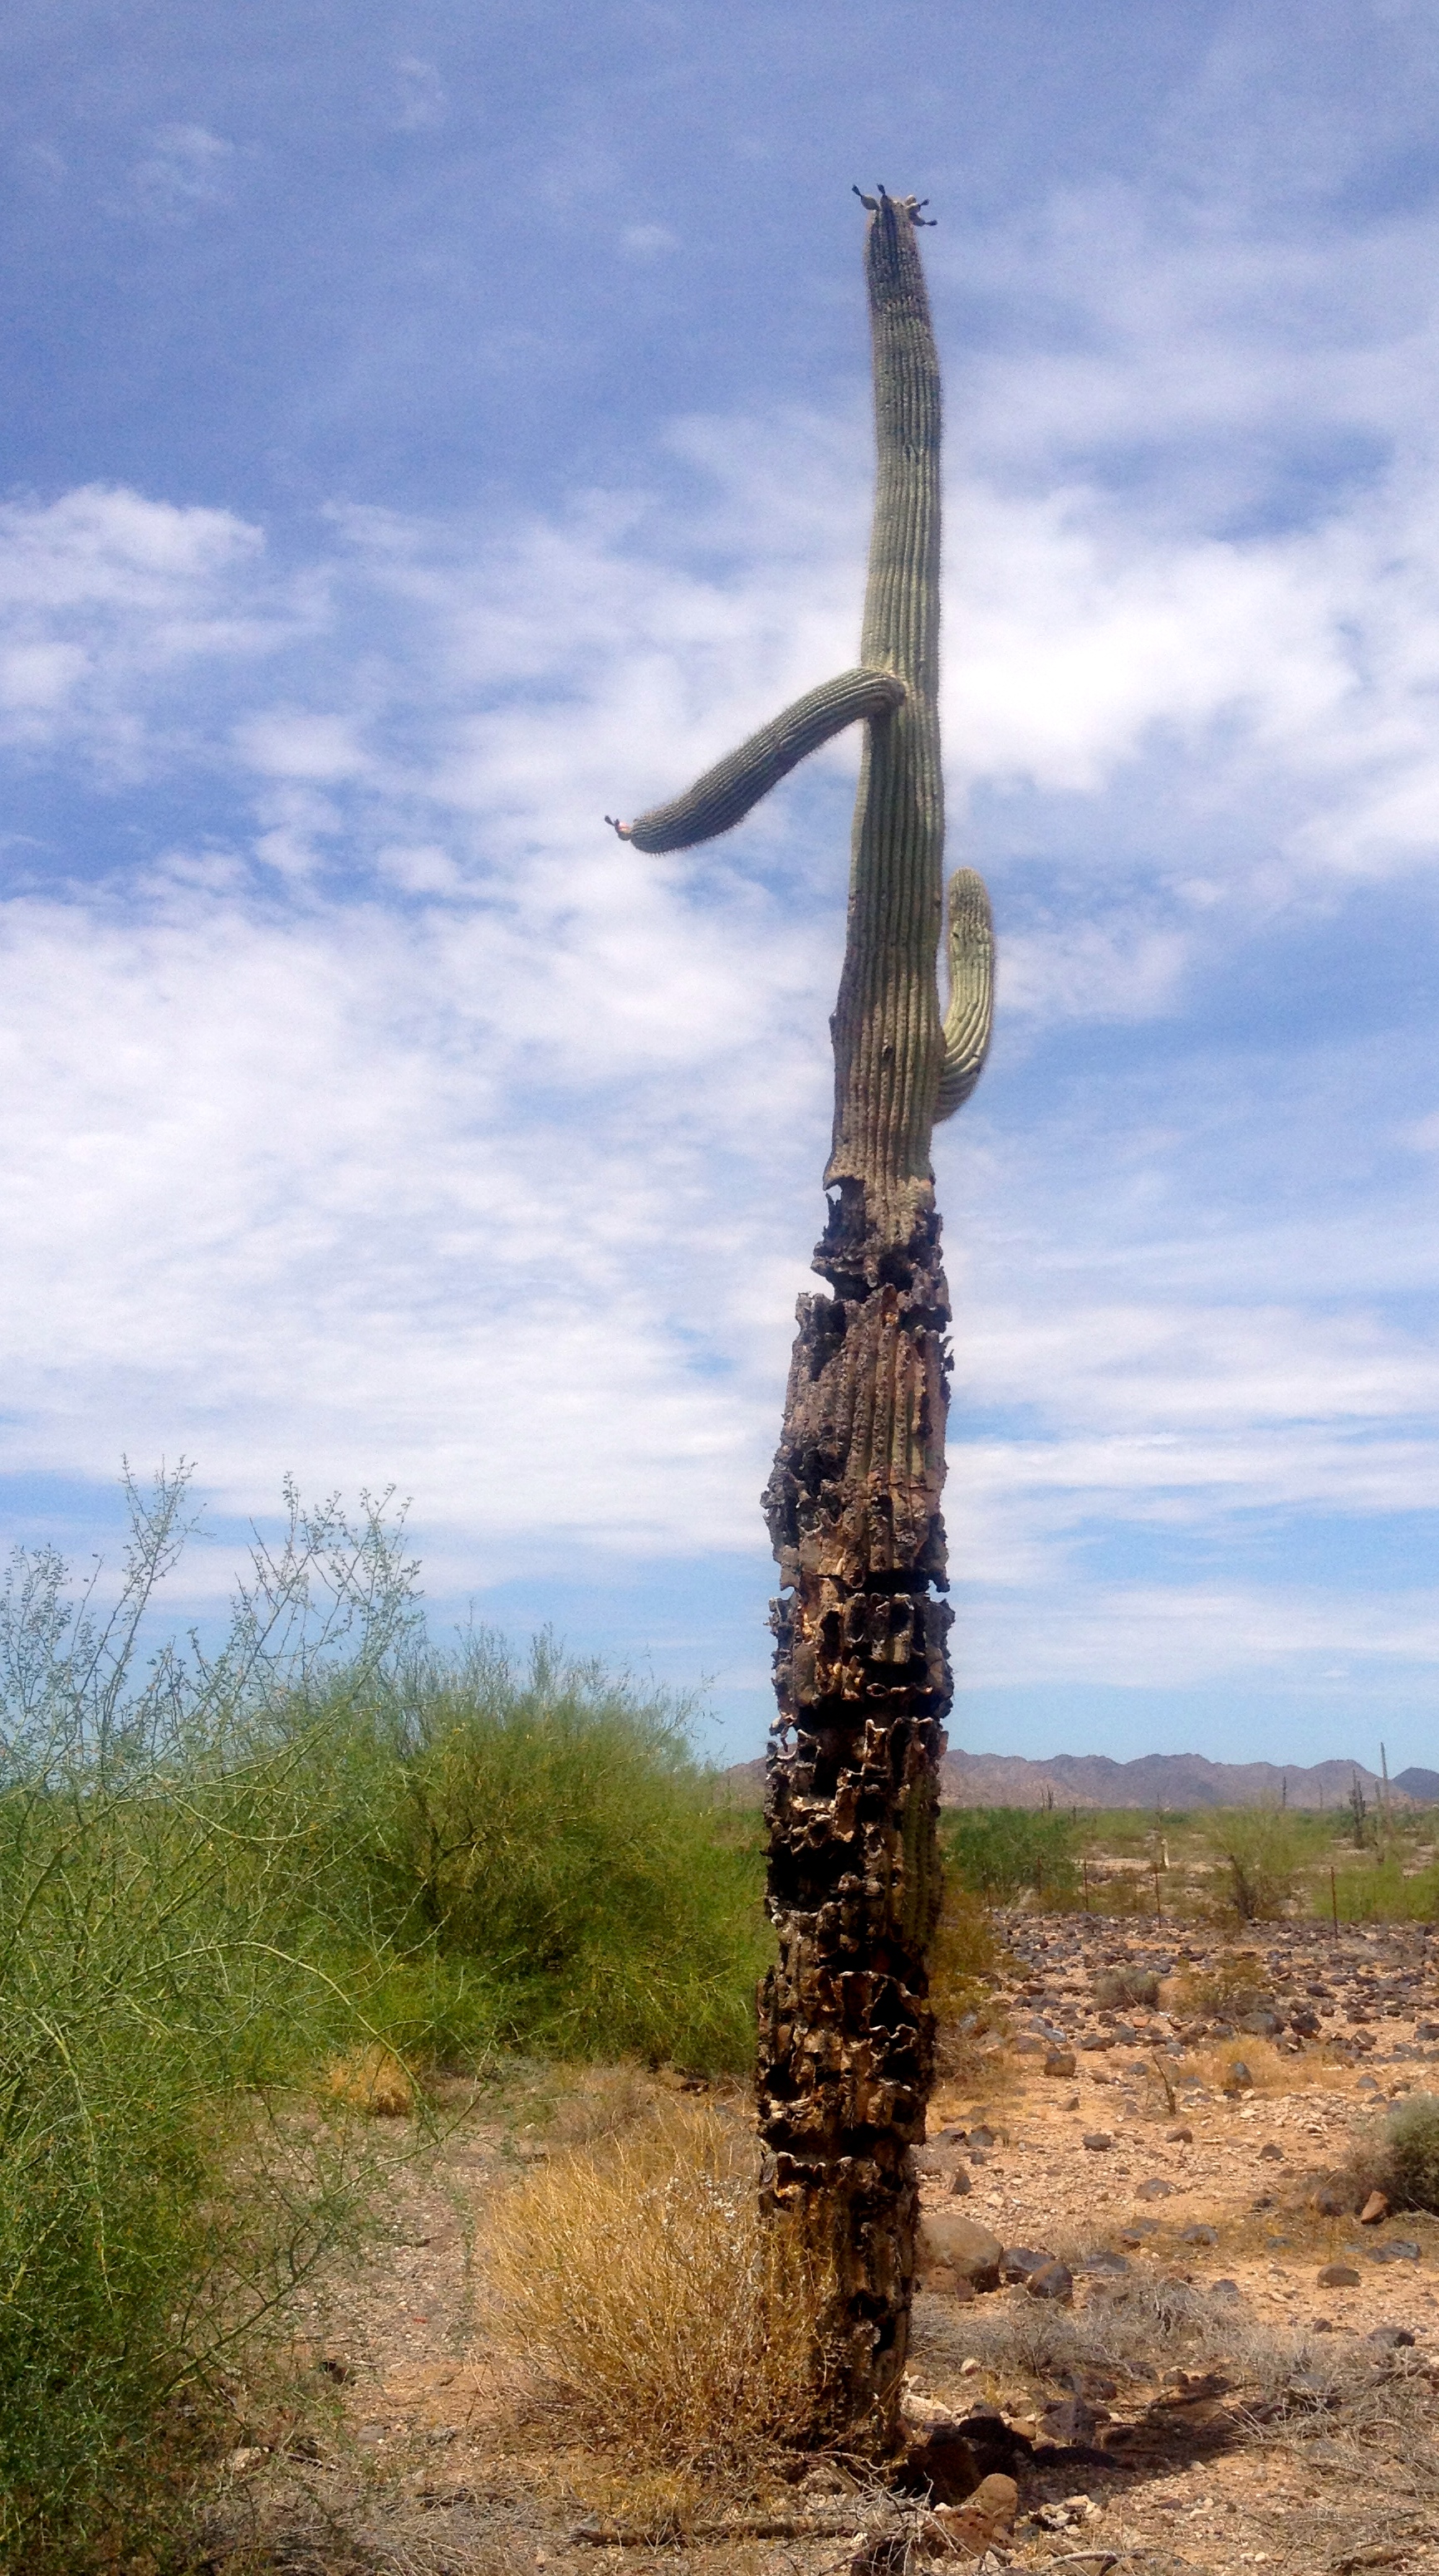 sad cactus cafe - middle of Arizona desert - July 2014